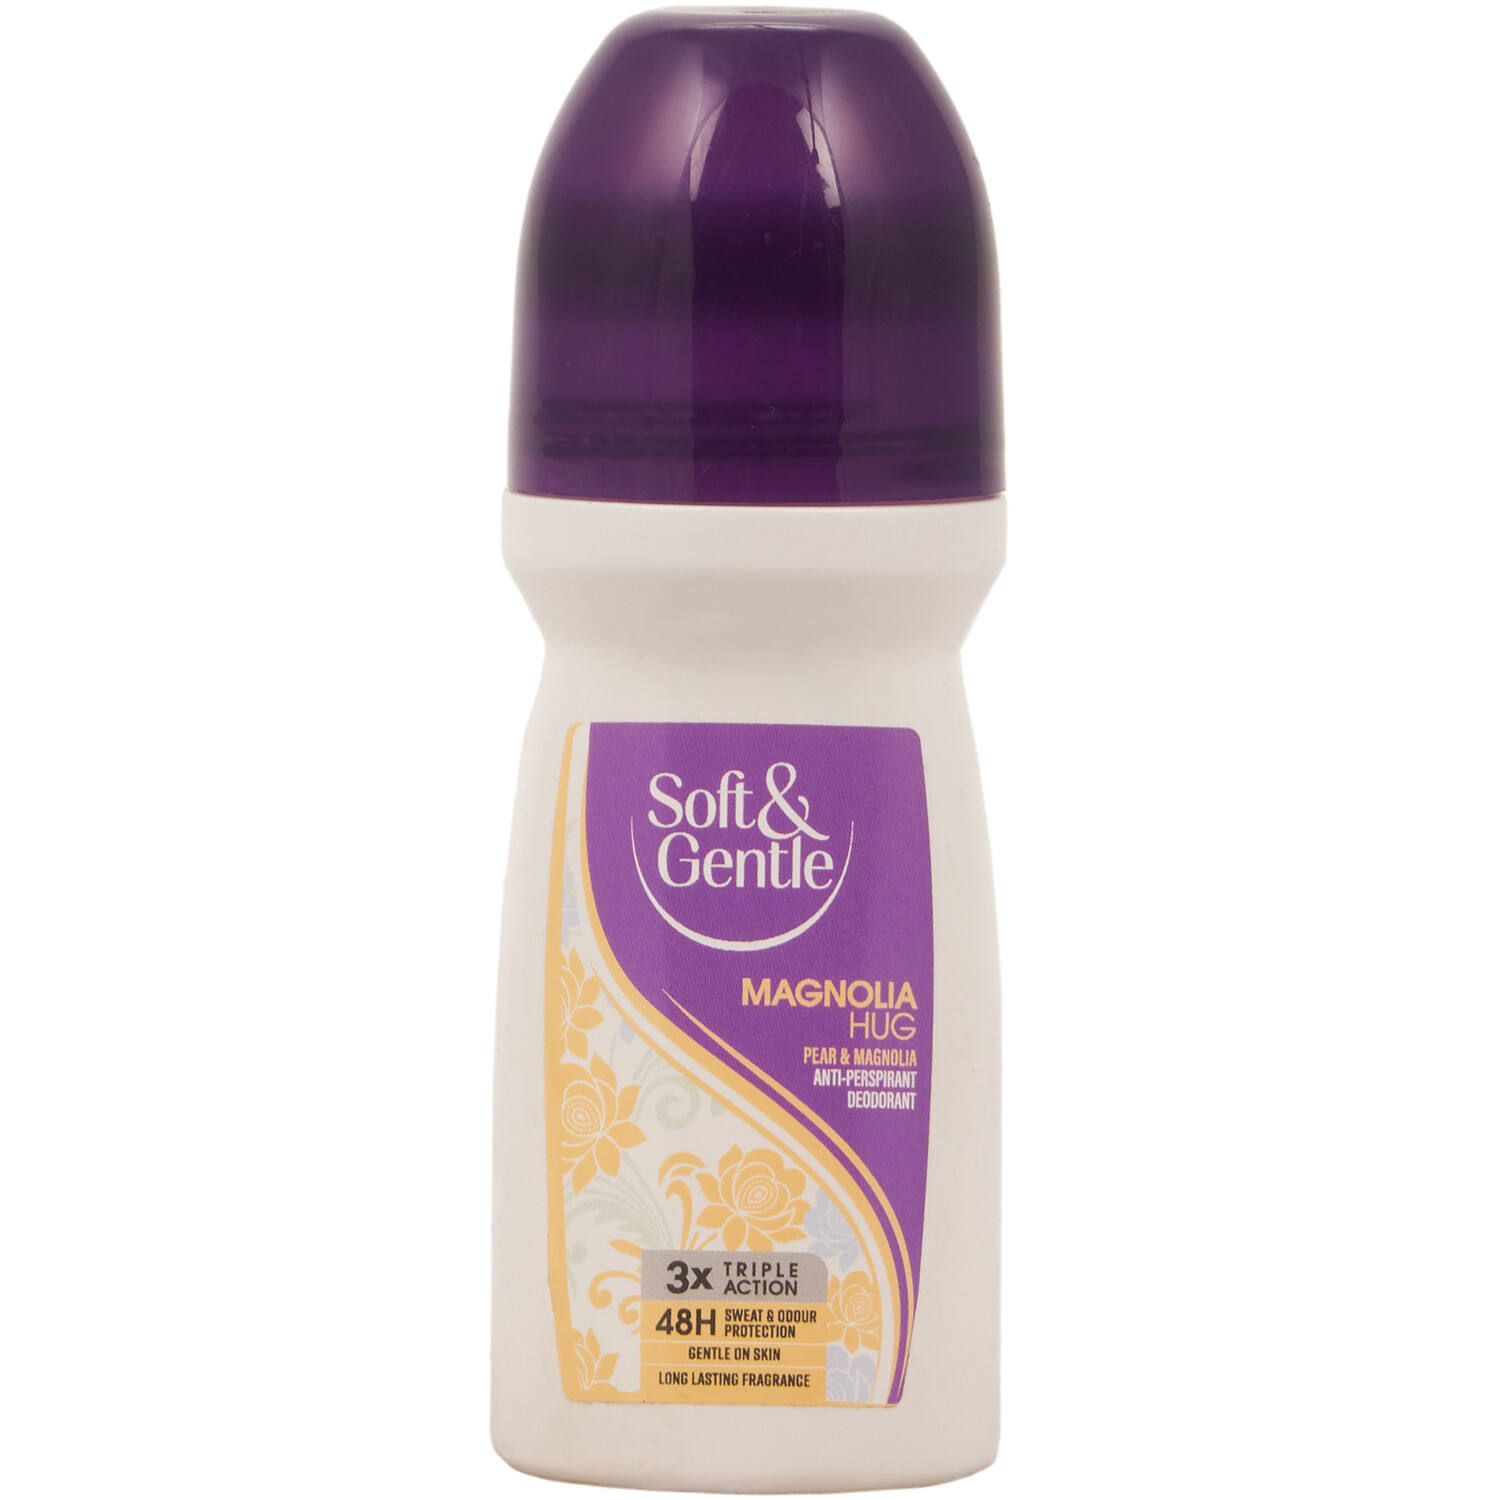 Soft & Gentle Magnolia Hug Roll-On Antiperspirant Deodorant - Purple Image 1